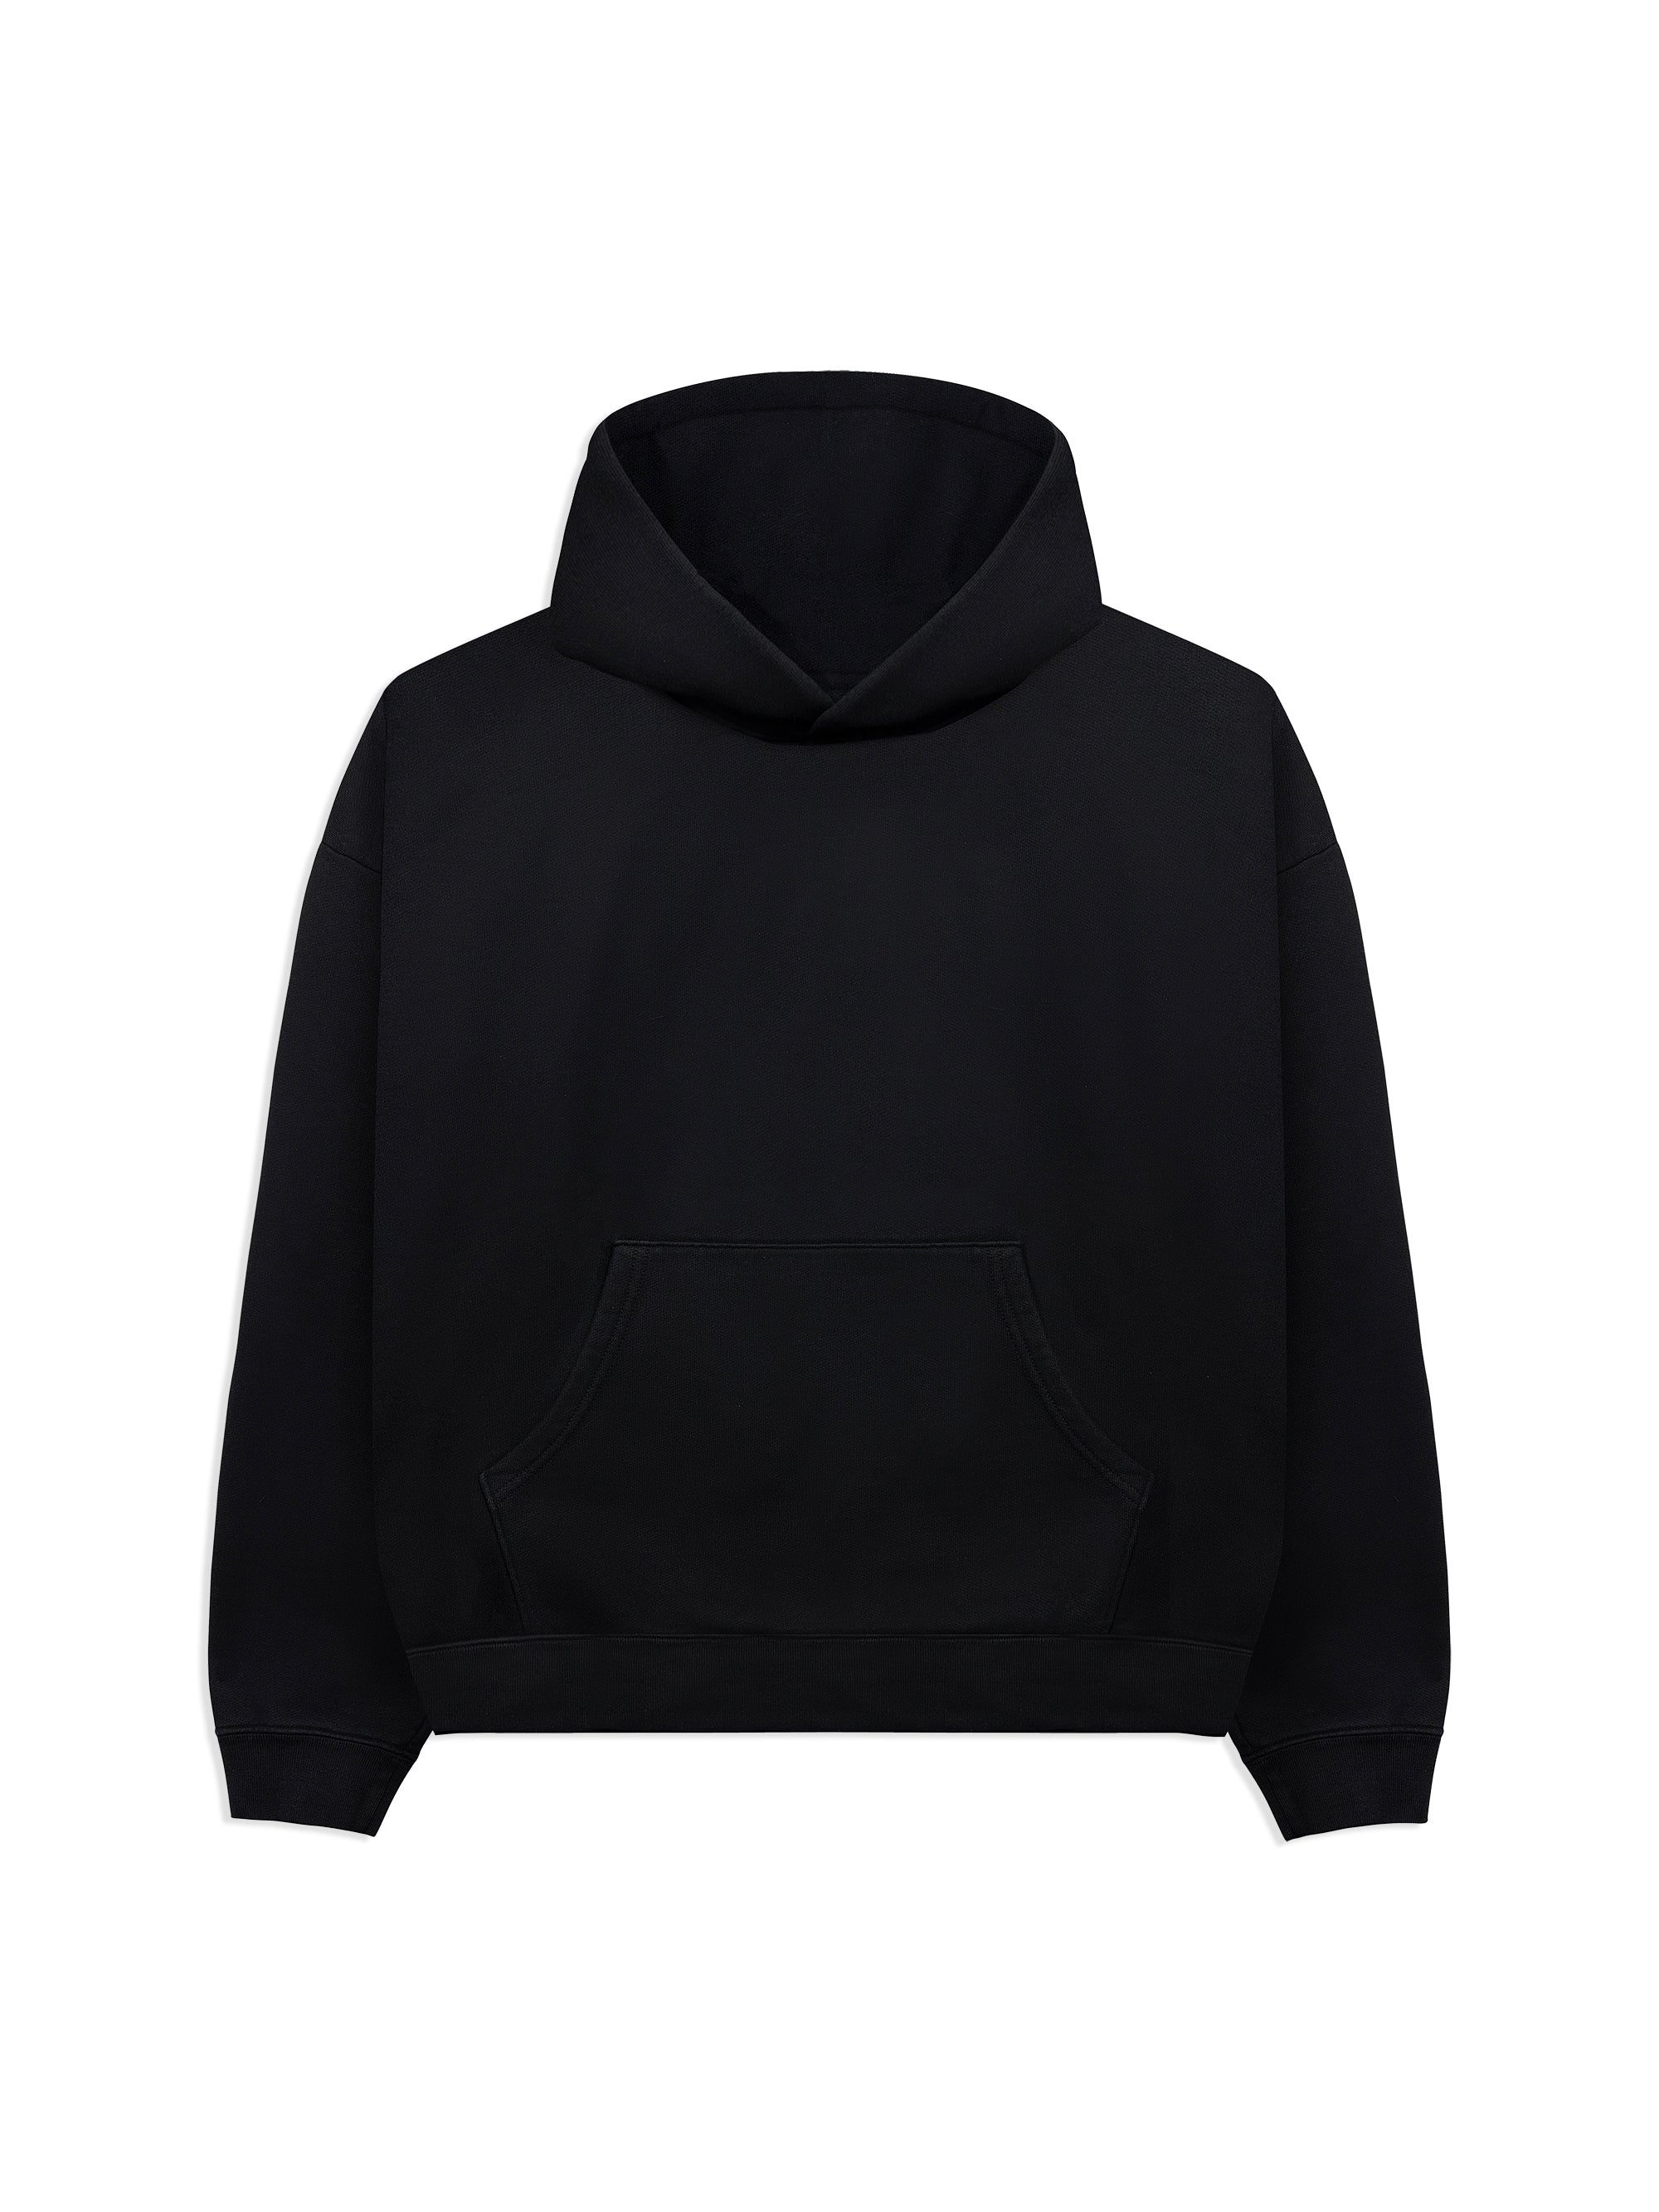 plain black hoodie template